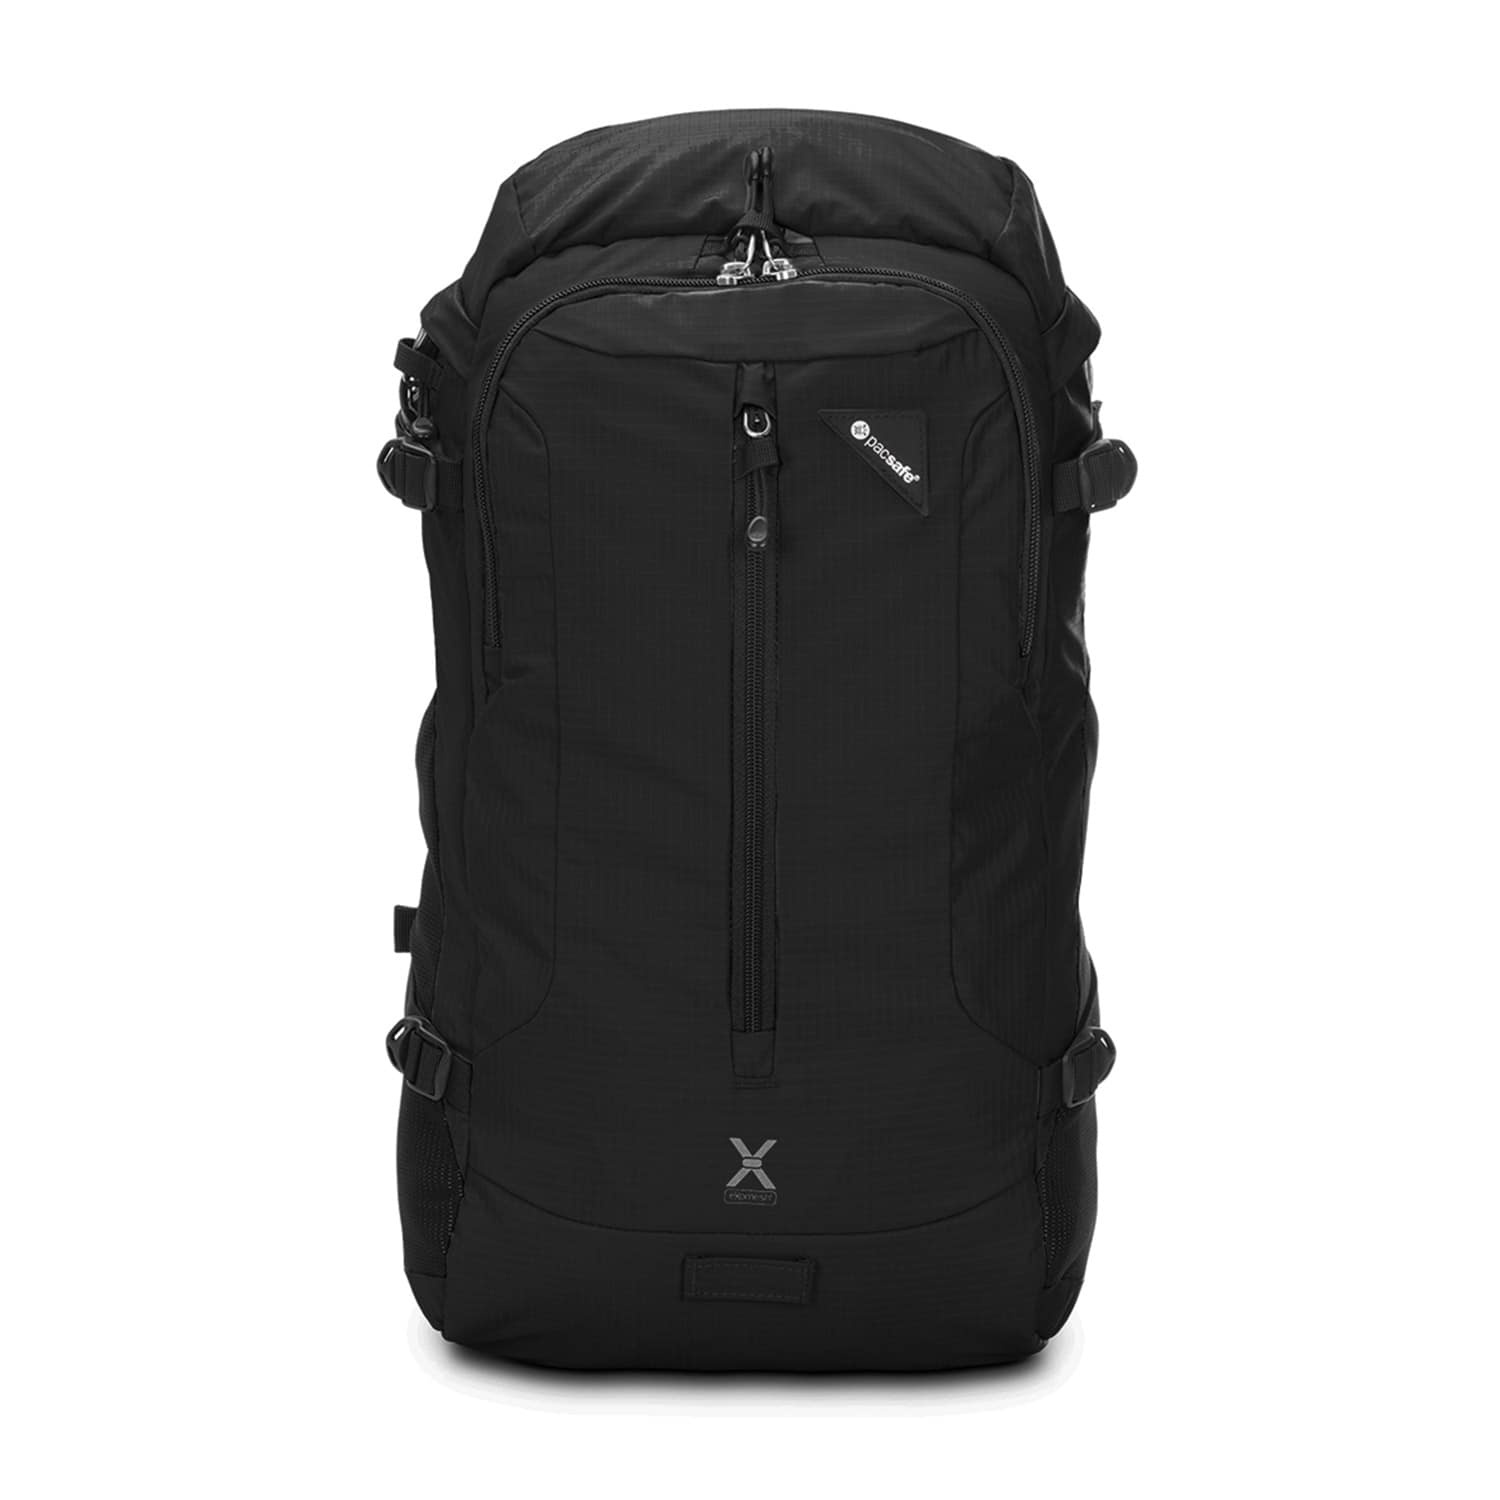 Рюкзак для ноутбука Pacsafe Venturesafe X 22, цвет: черный, 22 л, черный